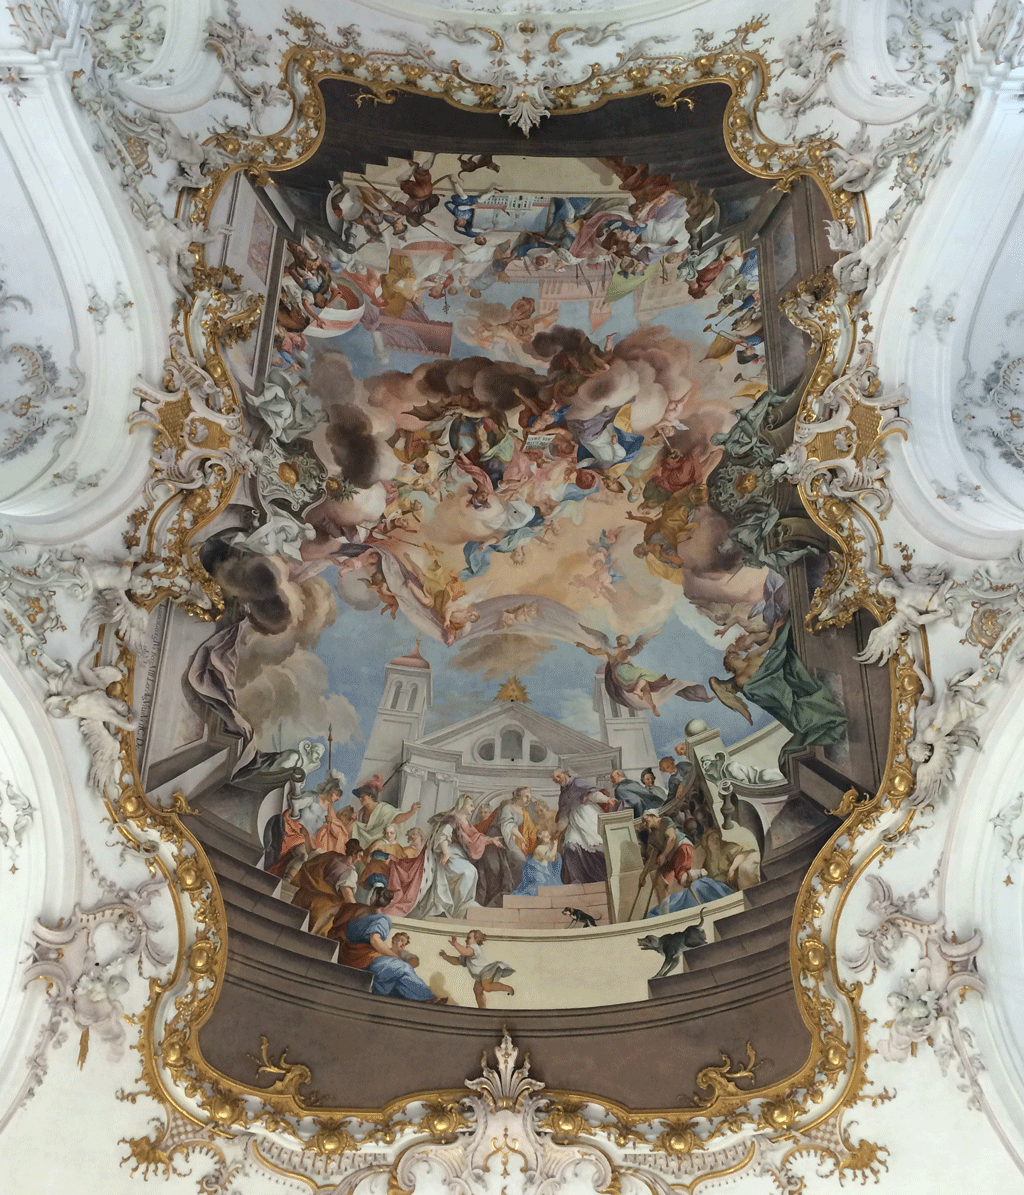 The beautiful painted ceiling of Marienmünster in Diessen